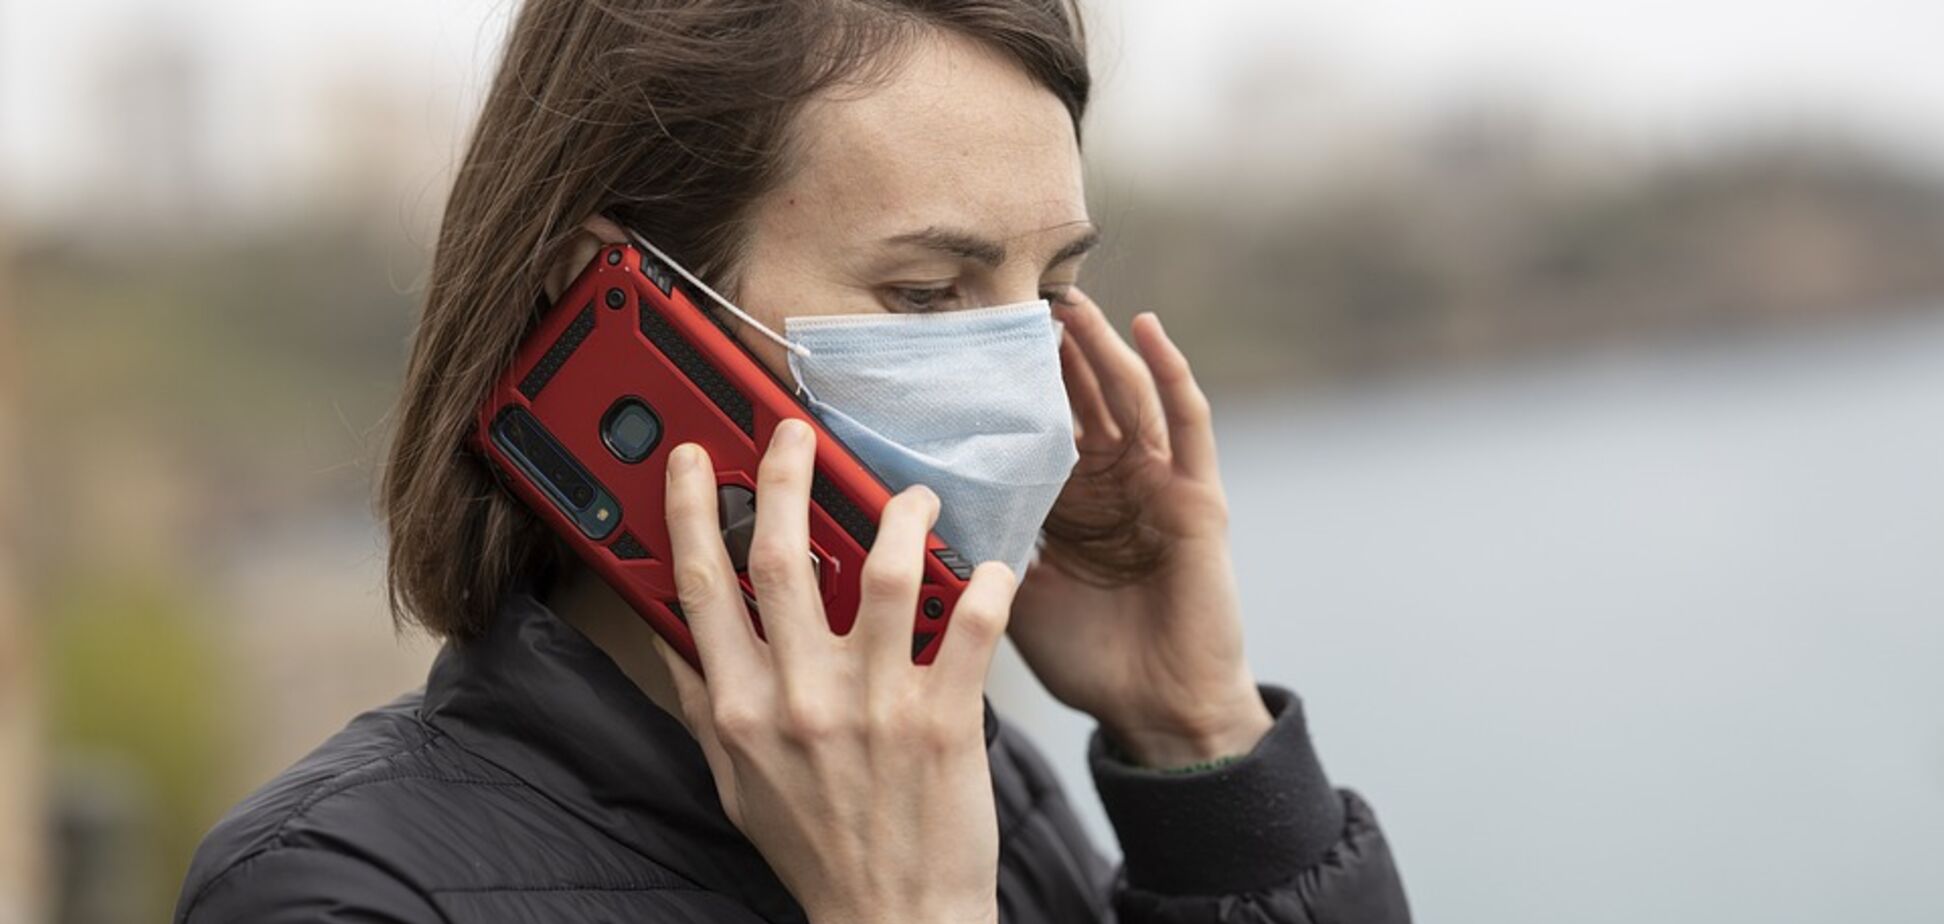 Смартфоны во время пандемии коронавируса несут опасность: специалист назвал причину